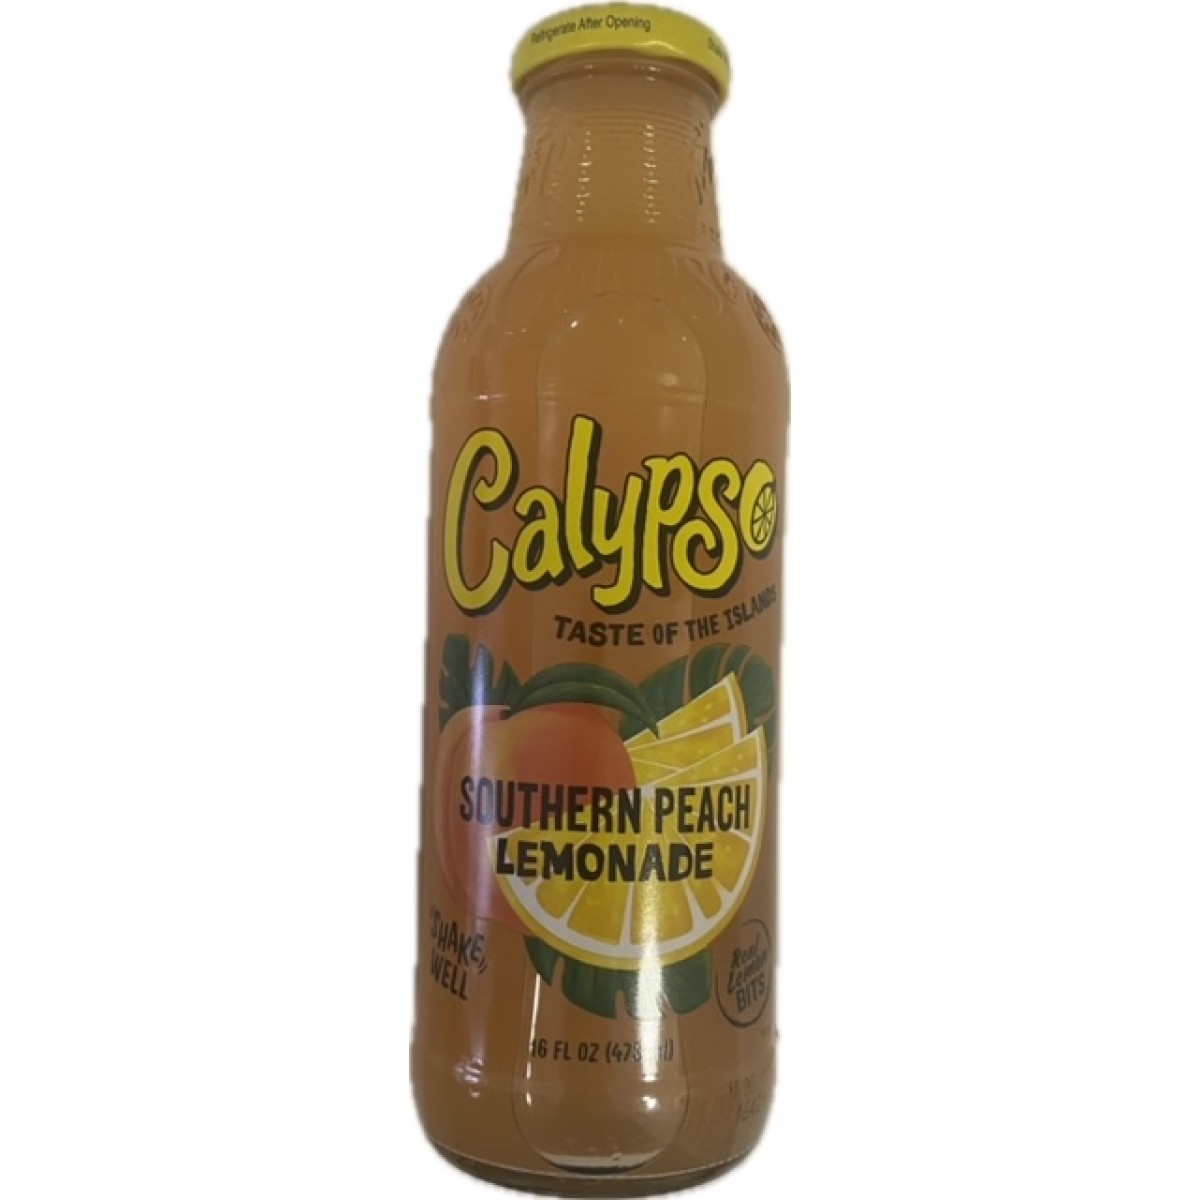 Calypso southern peach lemonade